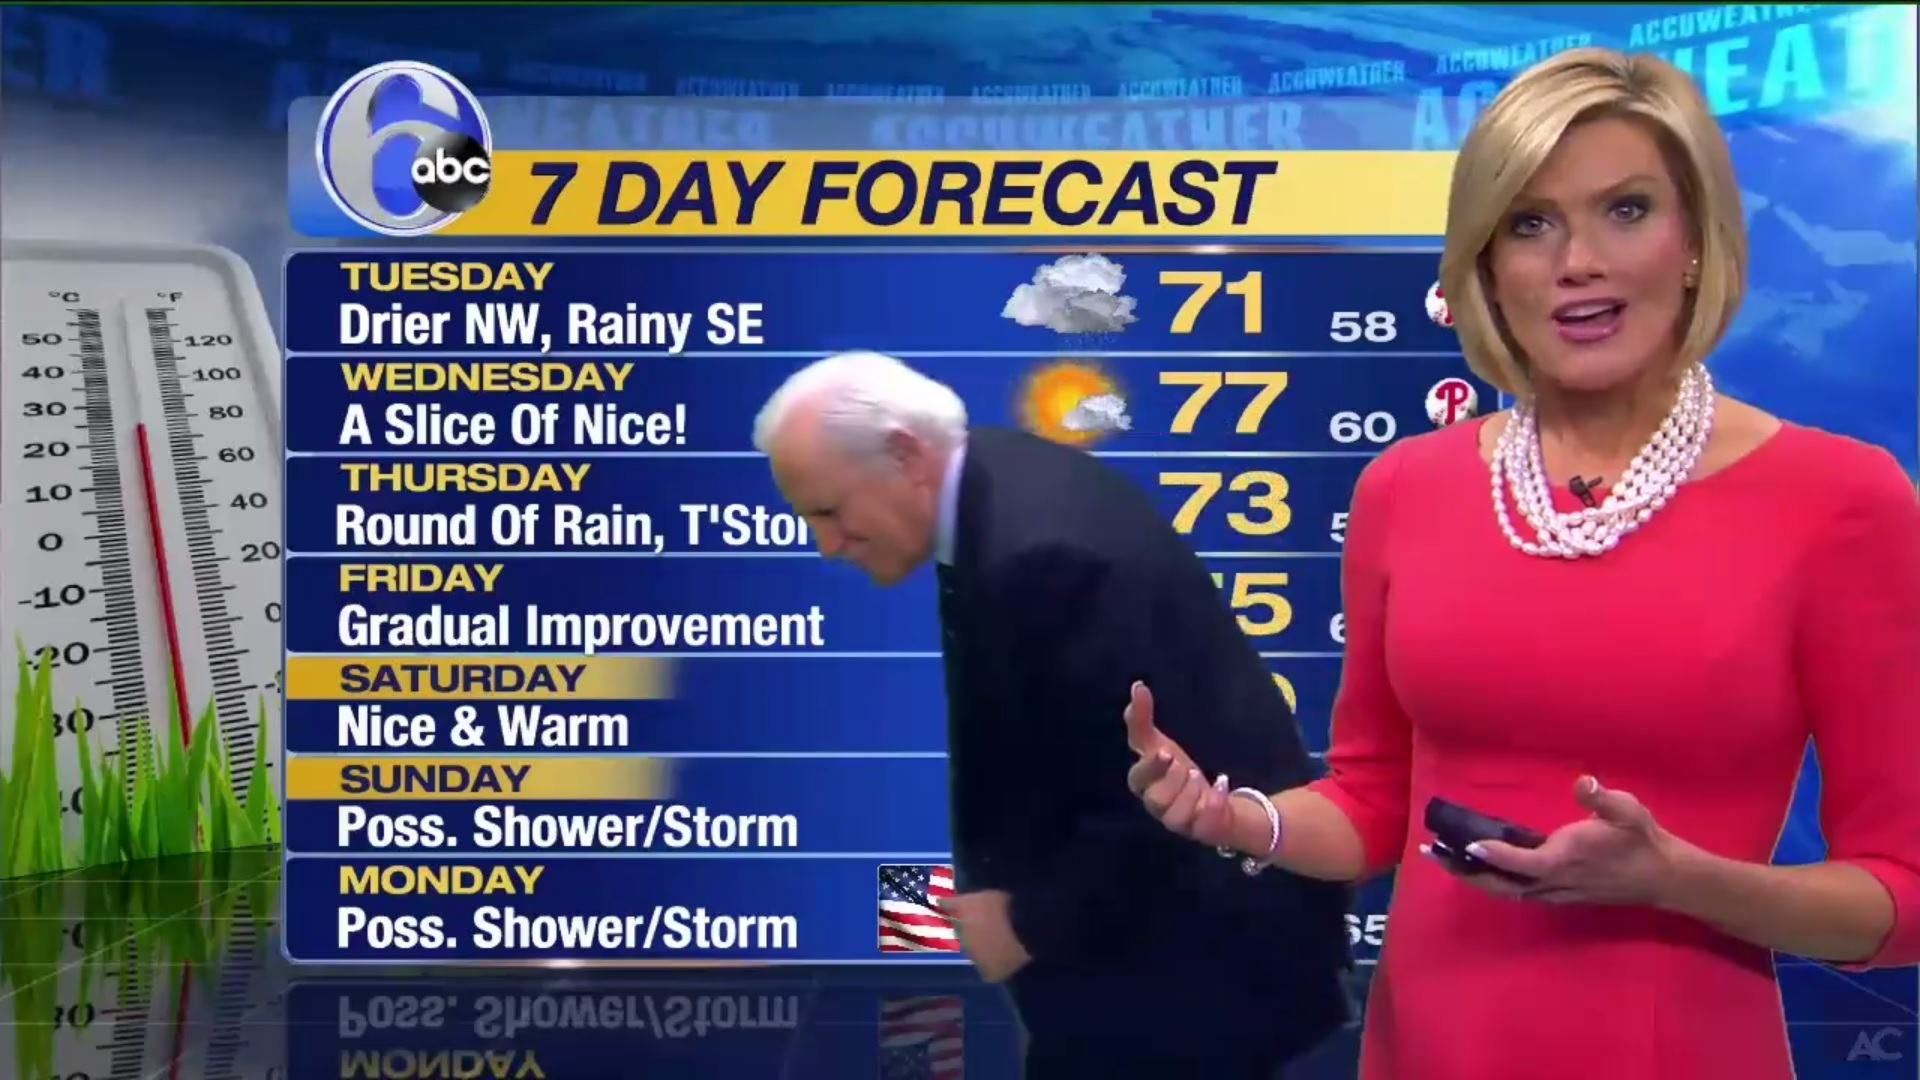 Американская ведущая погоды смешно отреагировала на потерянную сережку в прямом эфире: видео